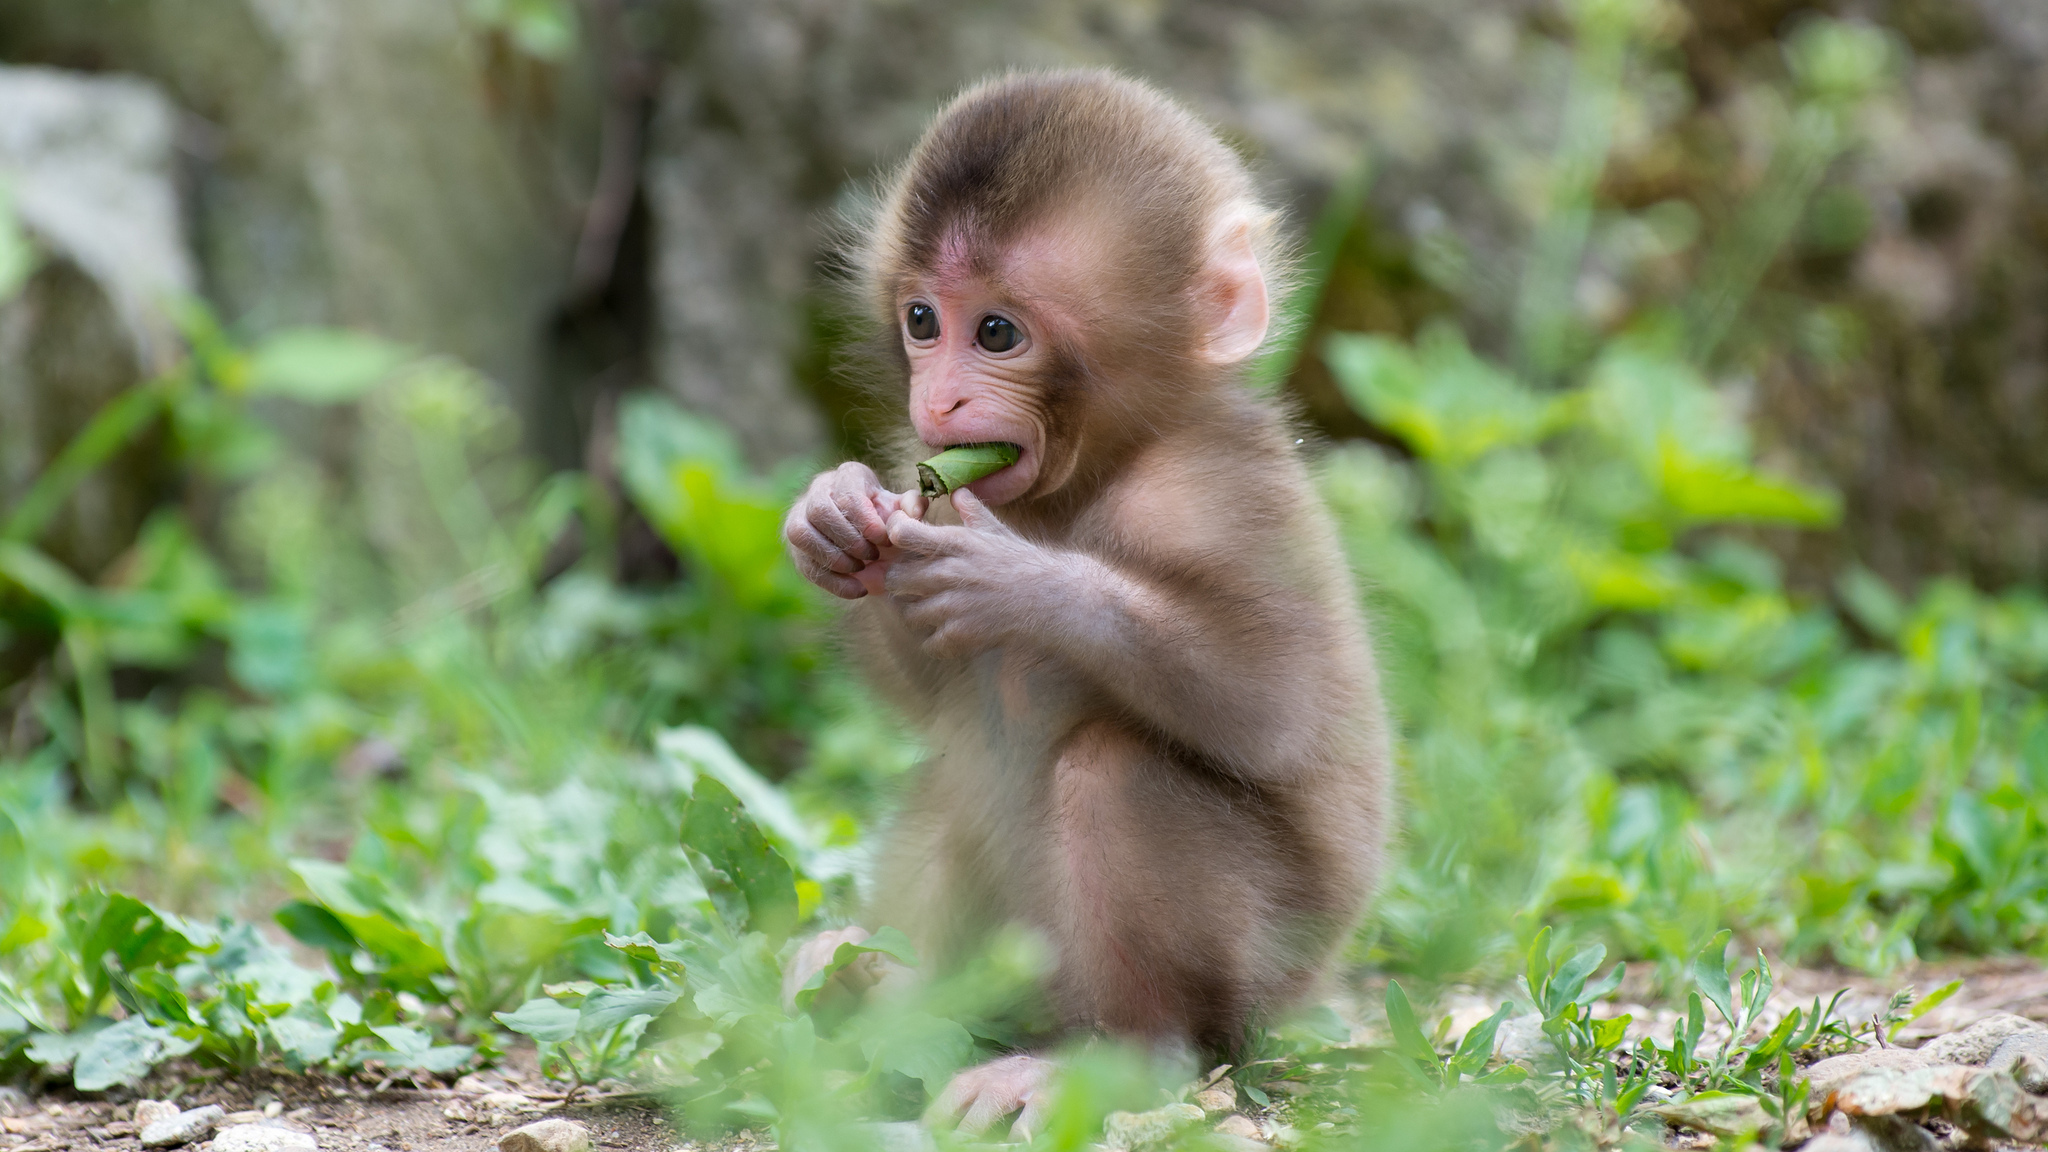 원숭이 라이브 벽지,붉은 털 원숭이,원숭이,대주교,일본 원숭이,야생 동물